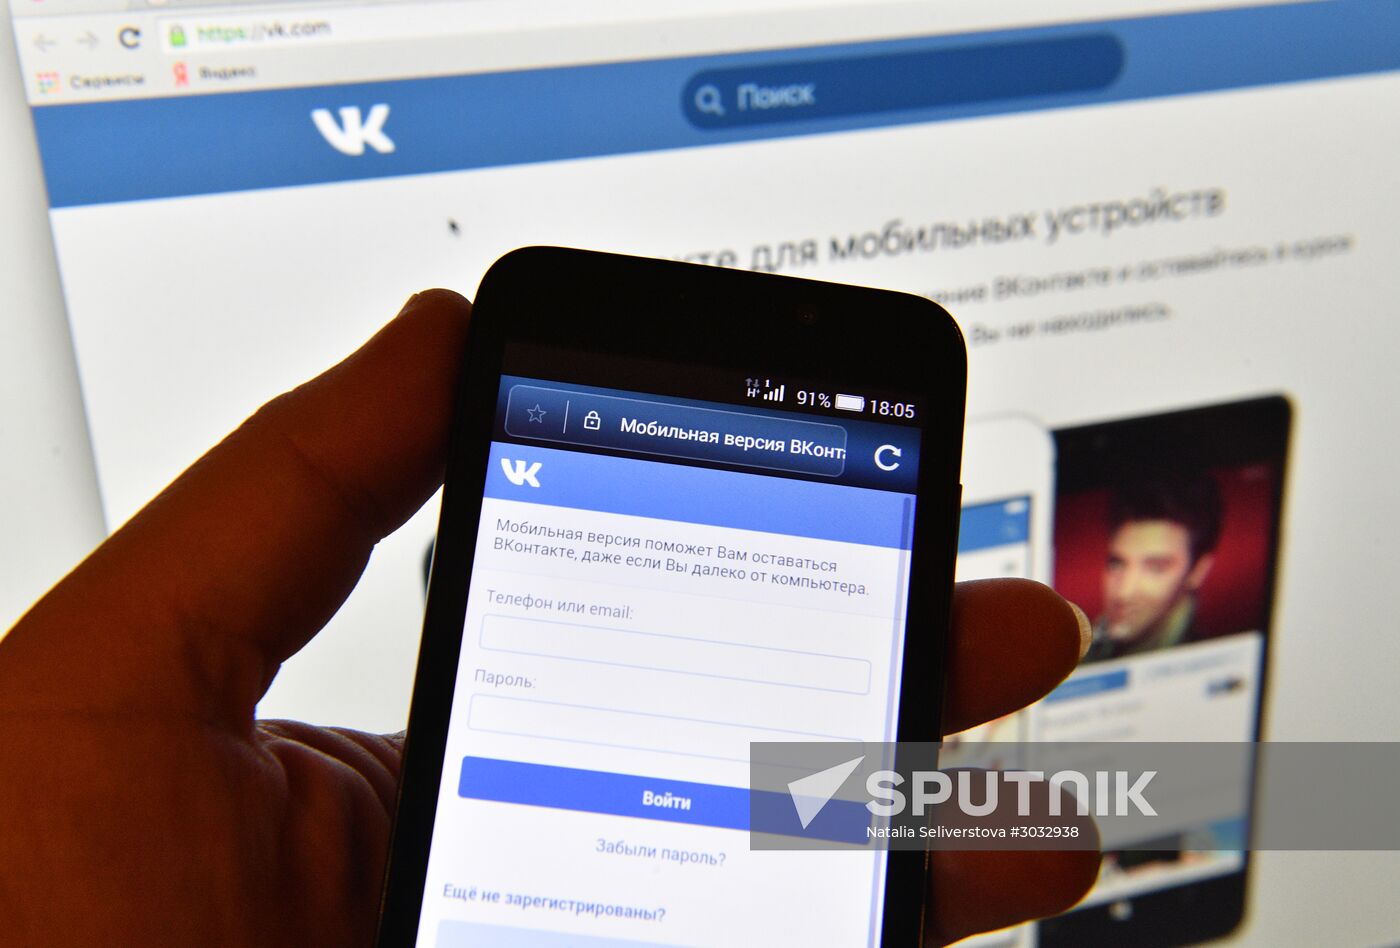 Vkontakte social network service